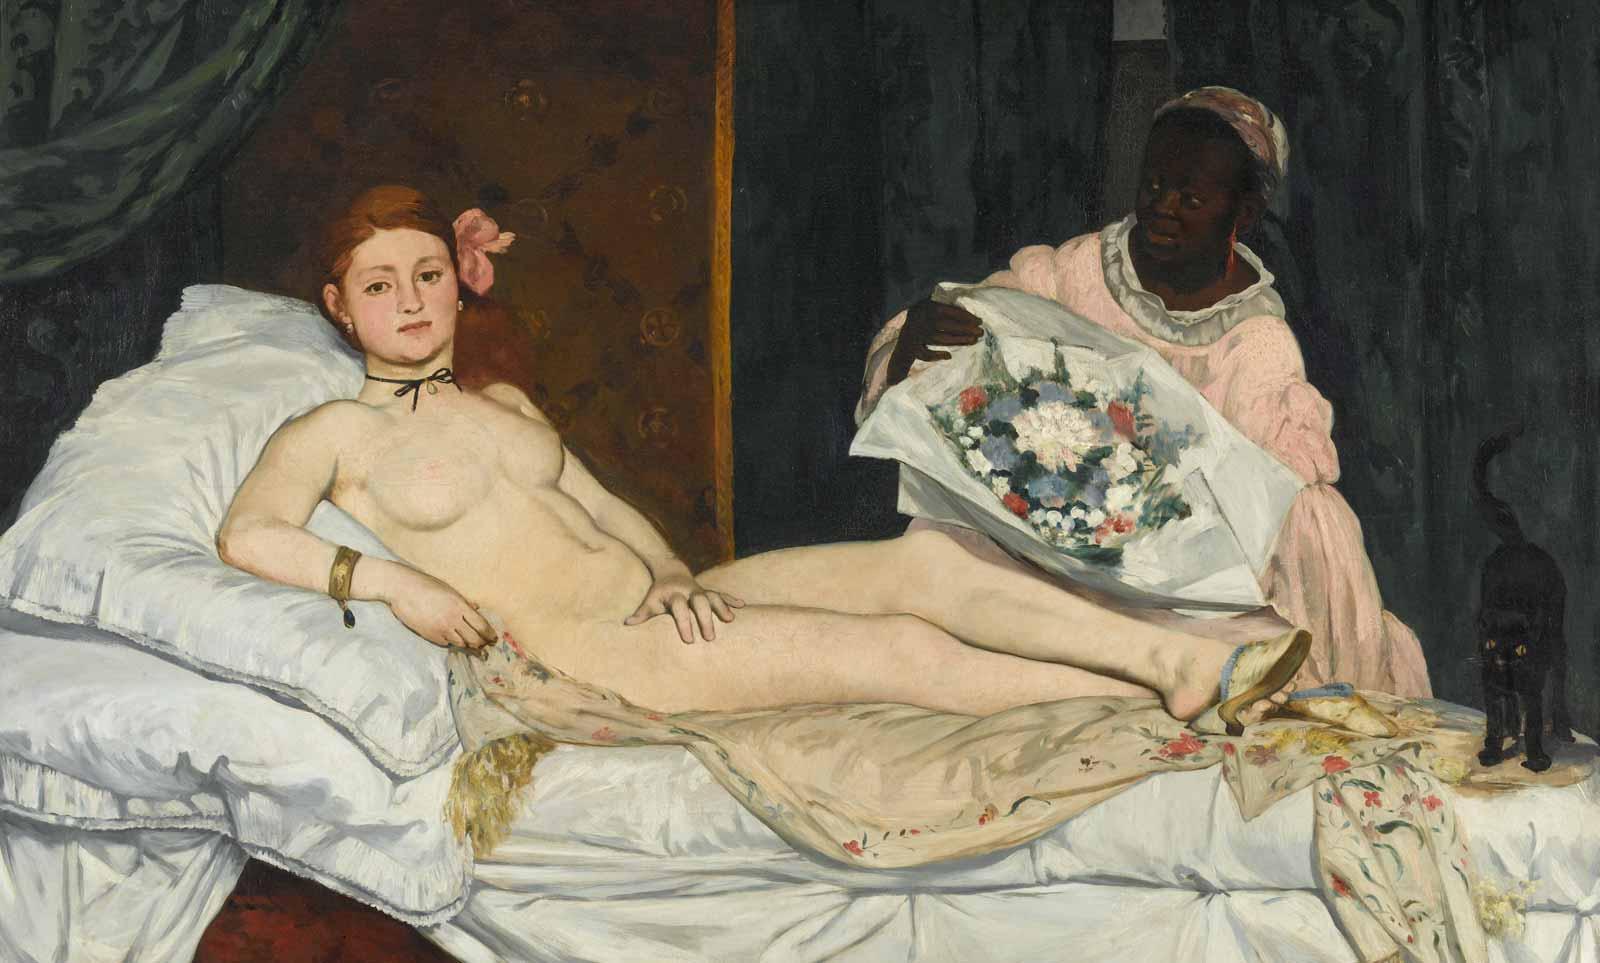 Edouard Manet (1832-1883), Olympia, 1863